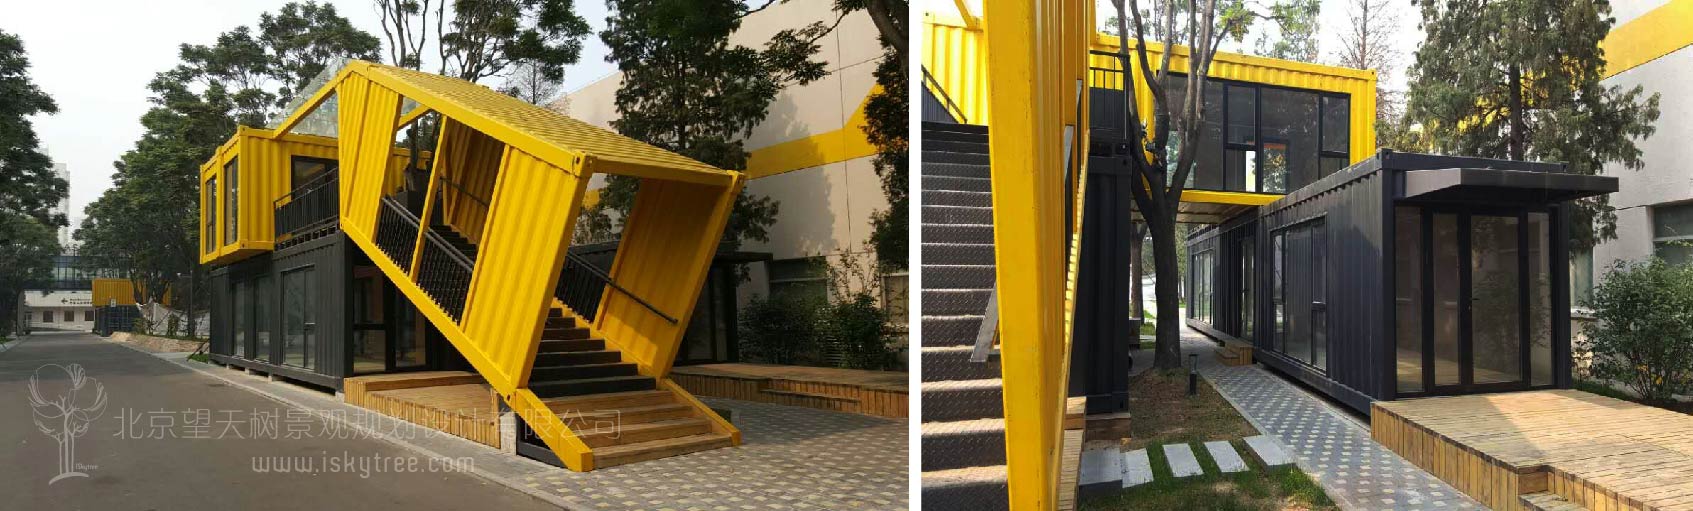 北京798集装箱创意工作室设计施工案例